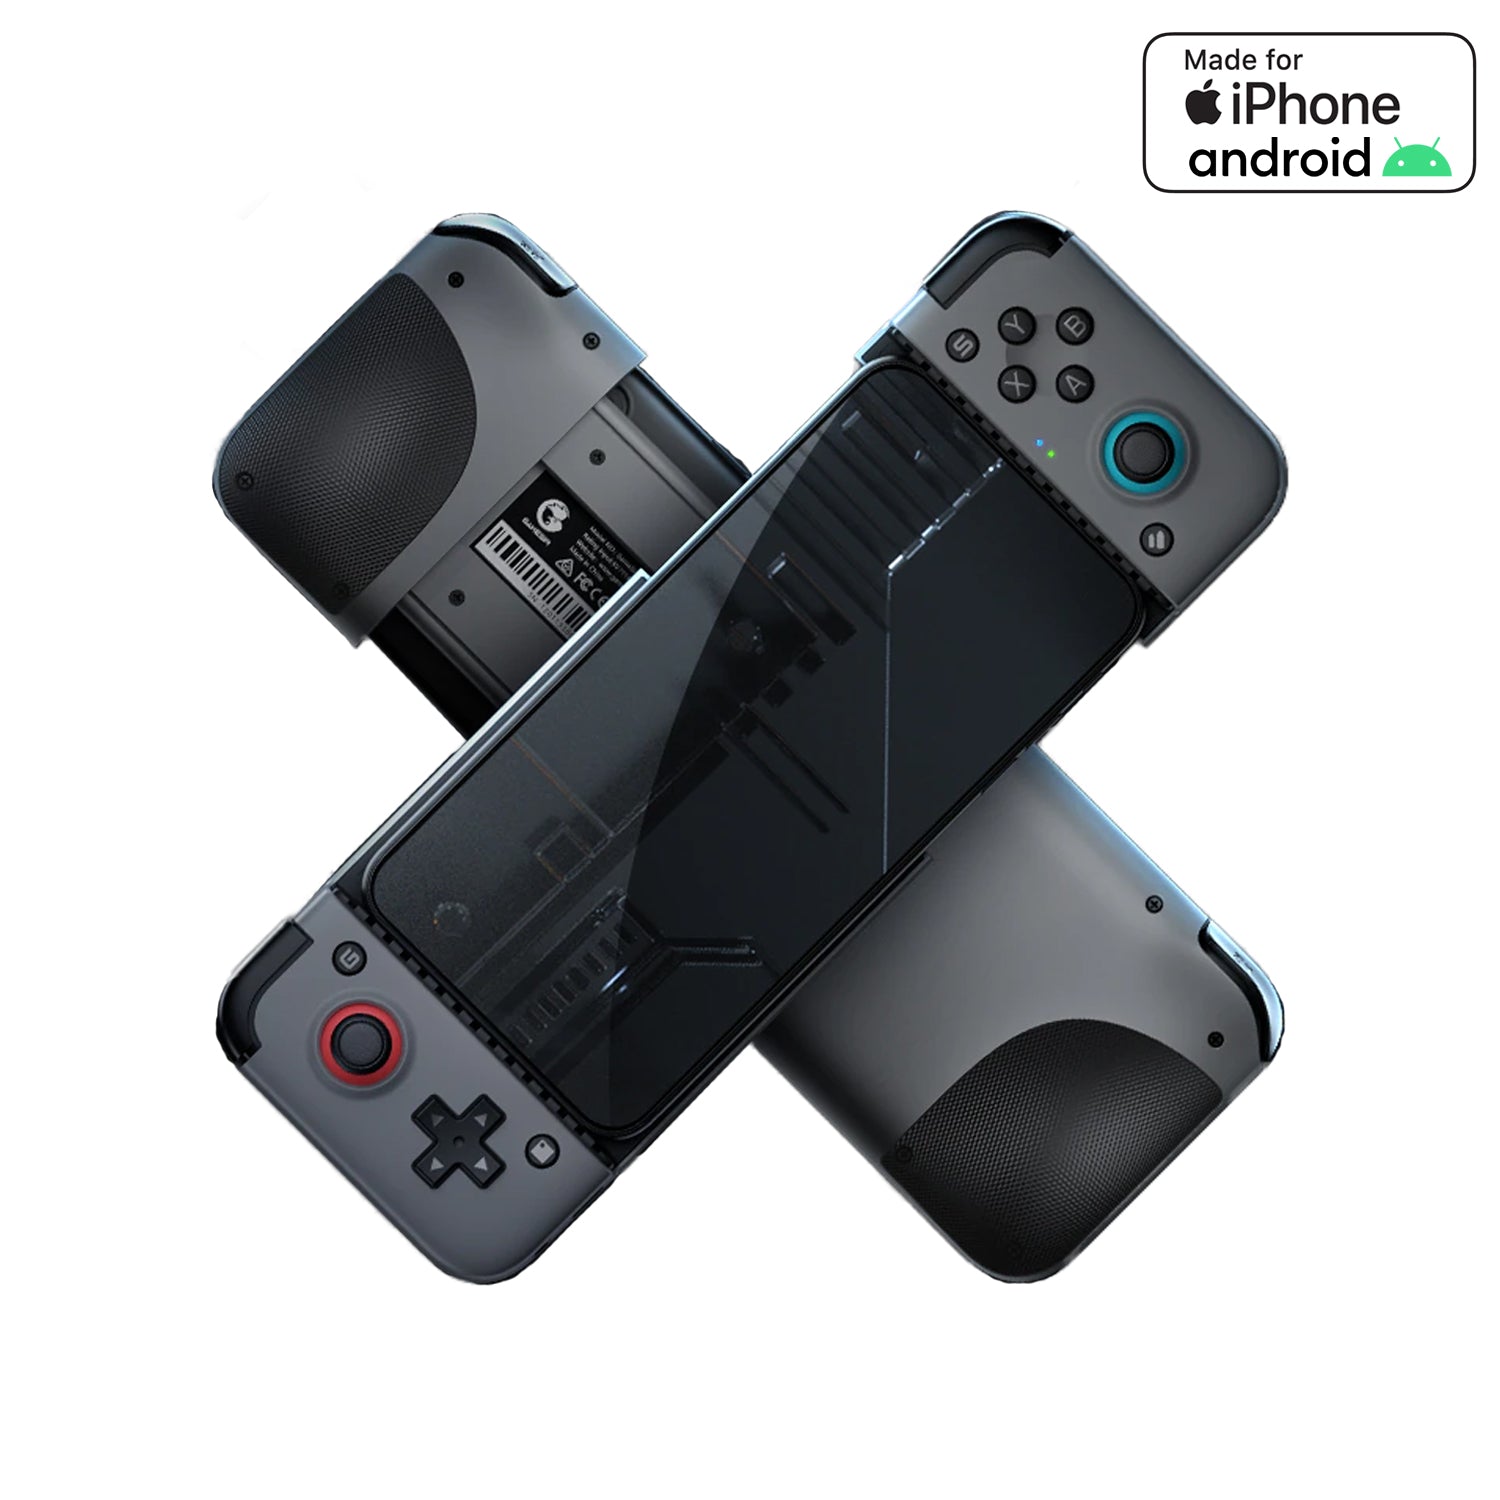 GameSir X2 Mobile Gaming Controller - Bluetooth Wireless